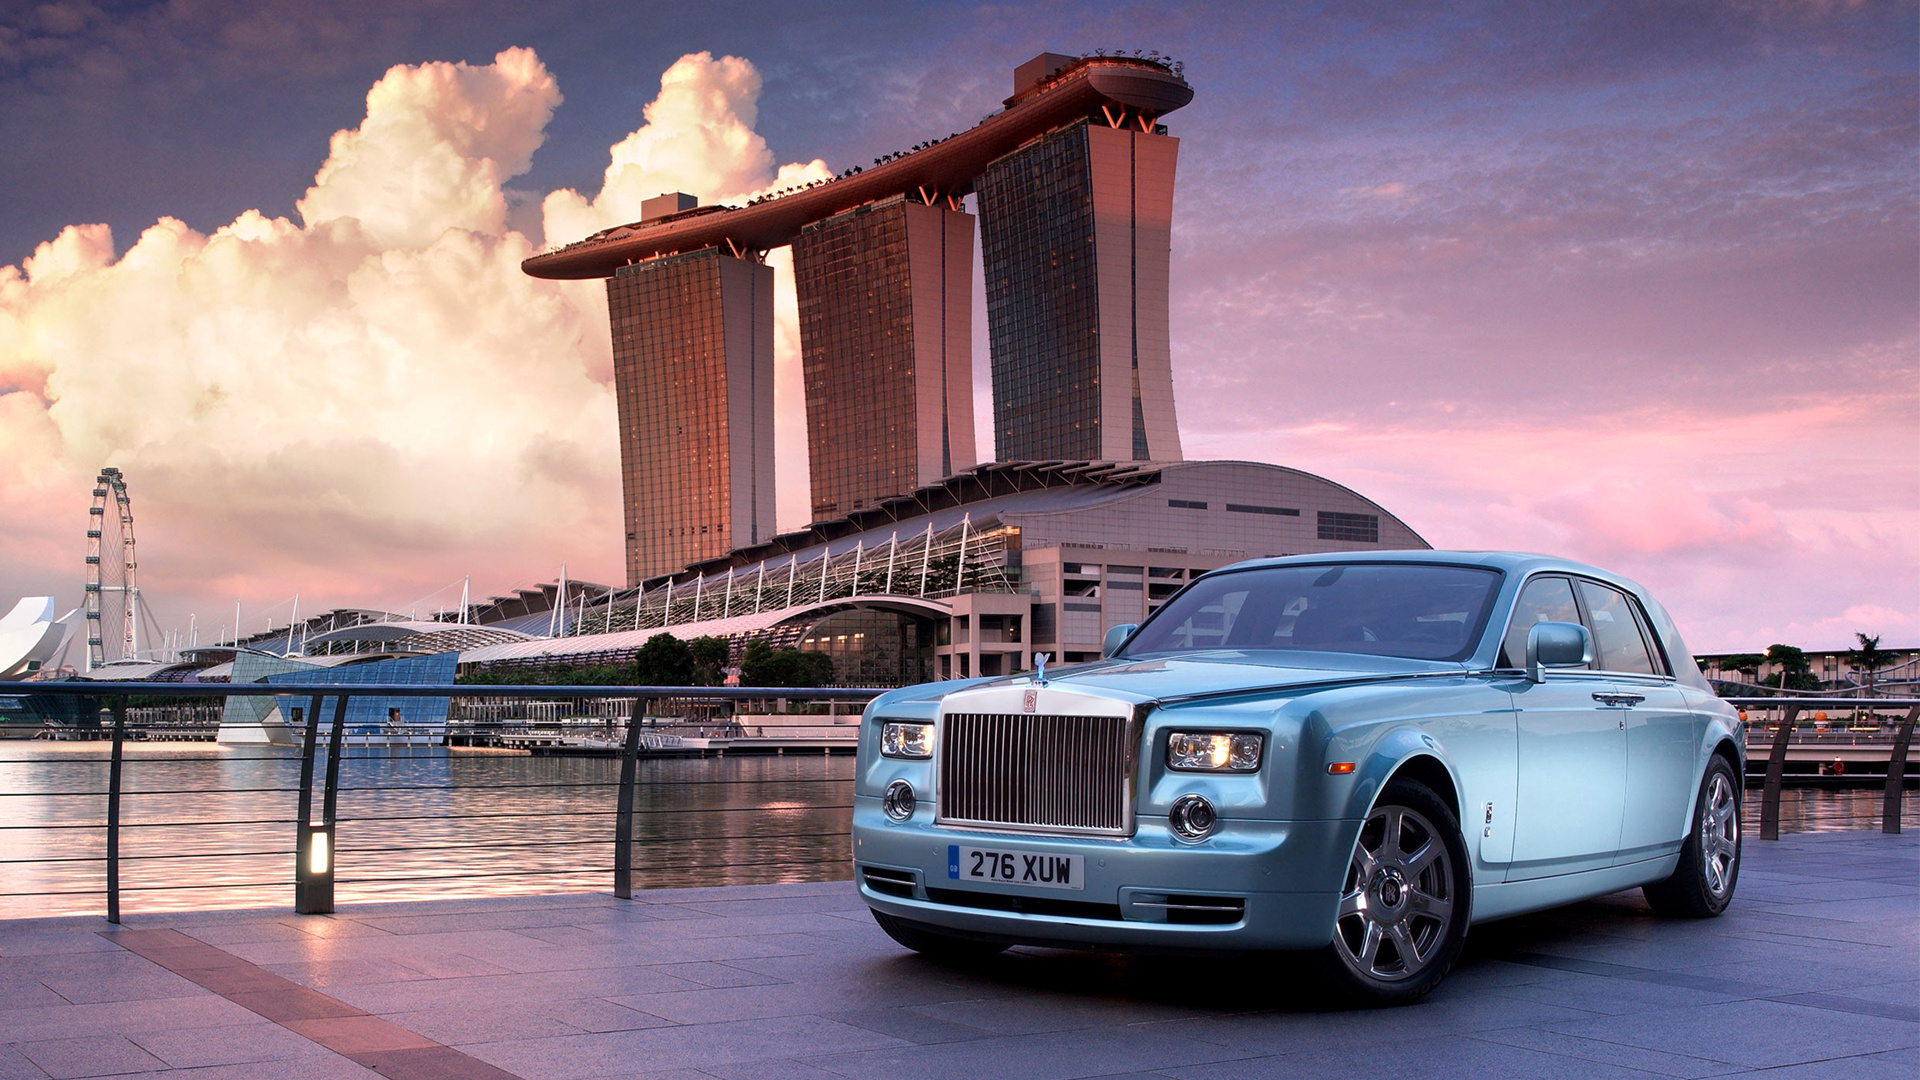 Rolls-Royce là biểu tượng của sự sang trọng và quyền lực. Hãy đắm mình trong những hình ảnh Rolls-Royce wallpaper đầy lịch lãm và tinh tế để cảm nhận được sức hút đặc biệt của dòng xe hơi này.